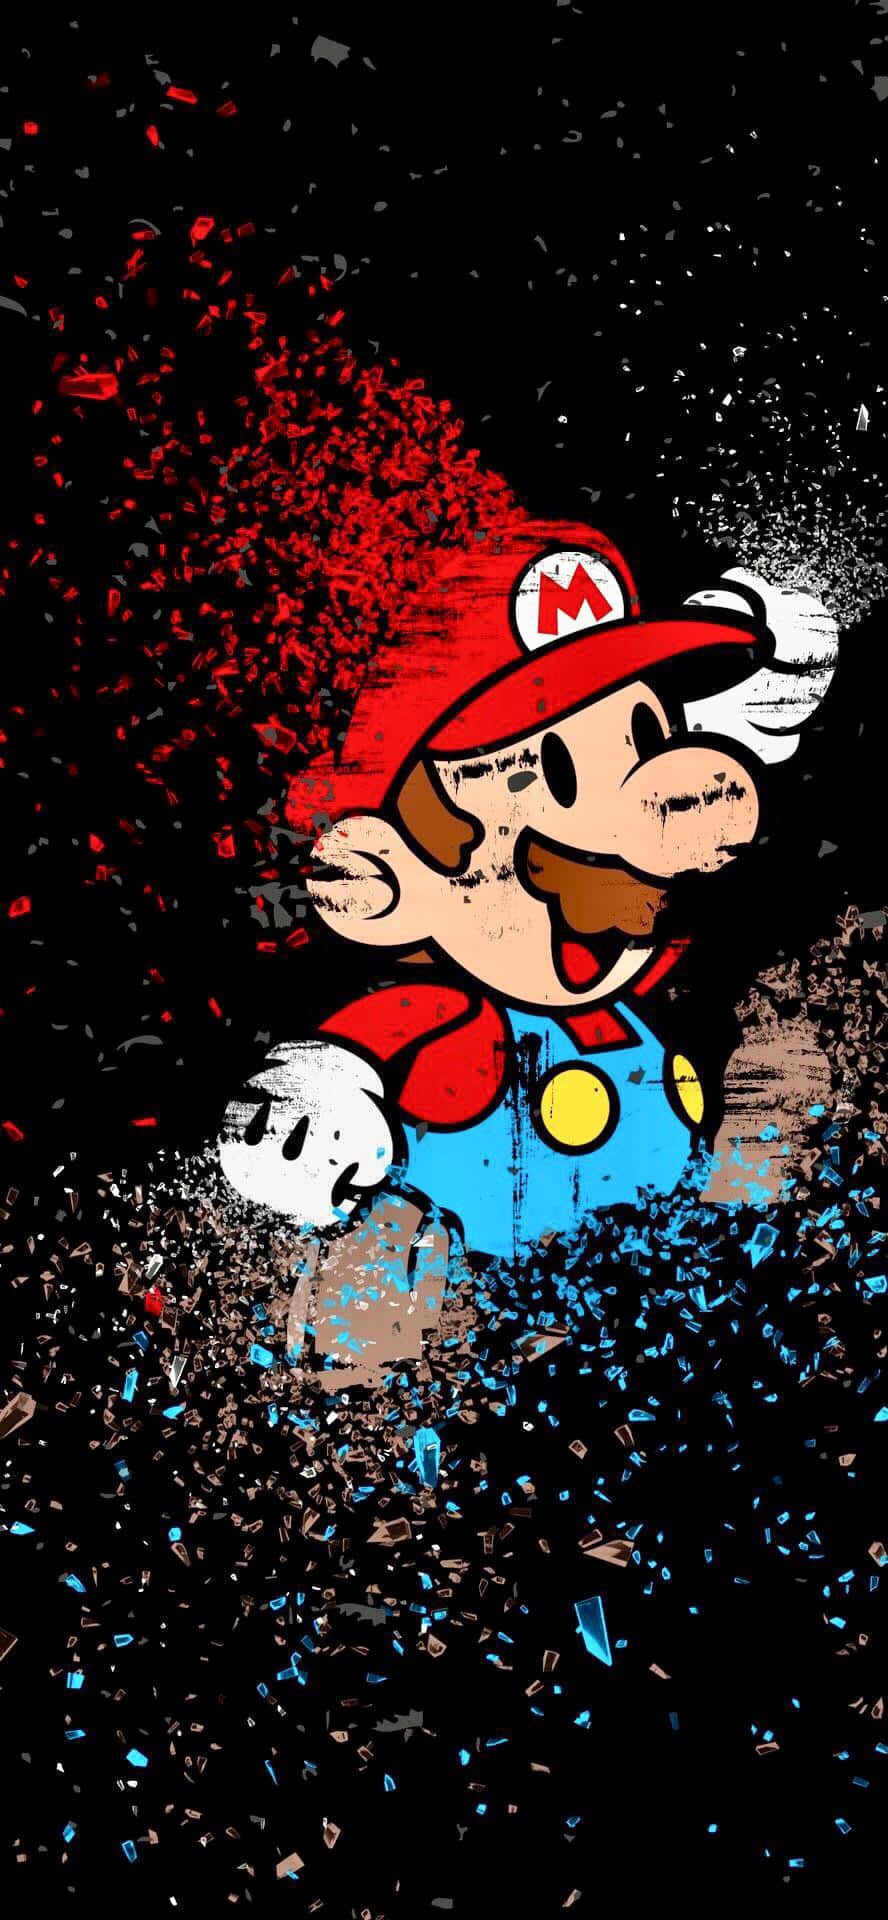 Cool Mario, The Classic Super Mario Bros Mascot. Background